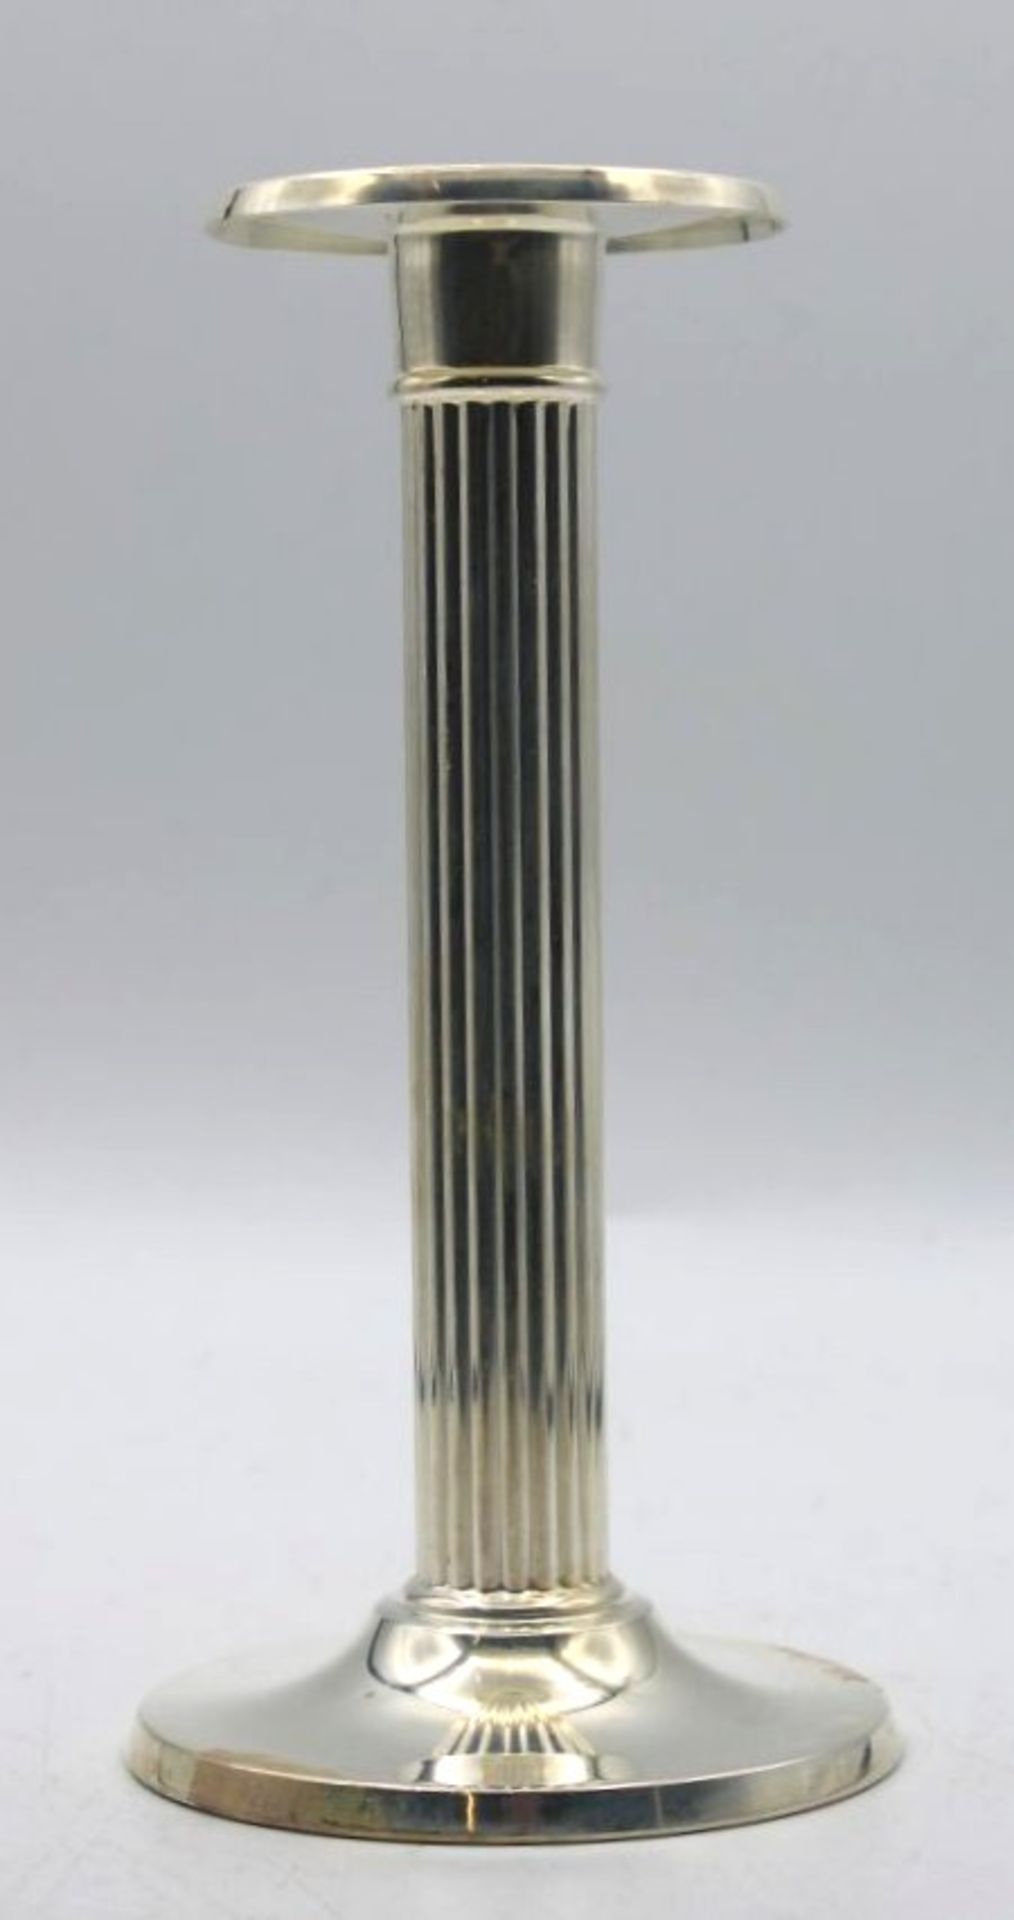 hoher Leuchter, 925er Silber, gefüllter Stand, 207,9gr., H-16cm.- - -22.61 % buyer's premium on